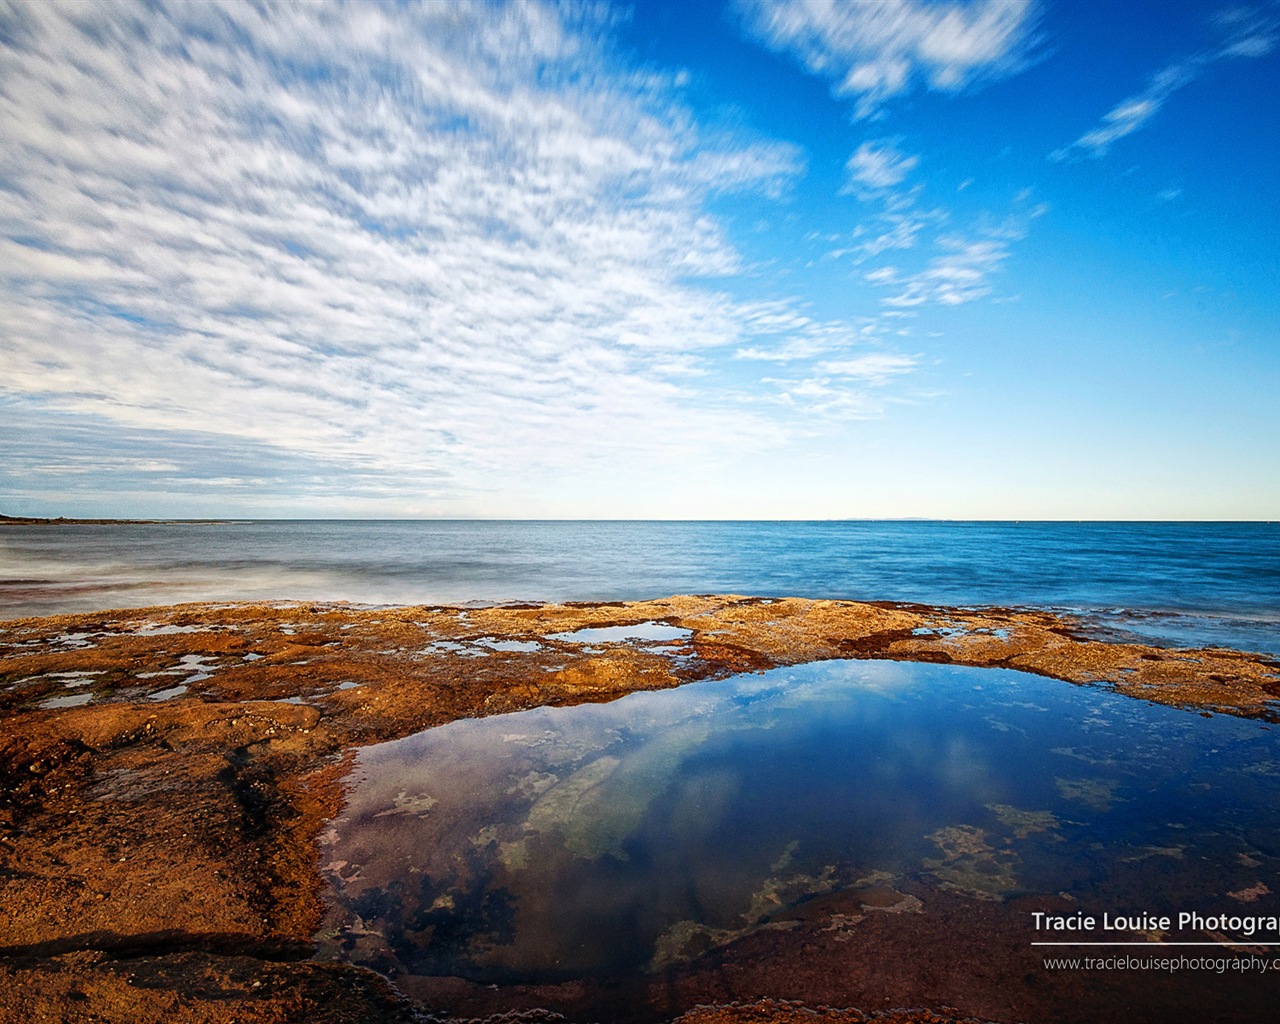 澳大利亚昆士兰州，风景秀丽，Windows 8 主题高清壁纸18 - 1280x1024